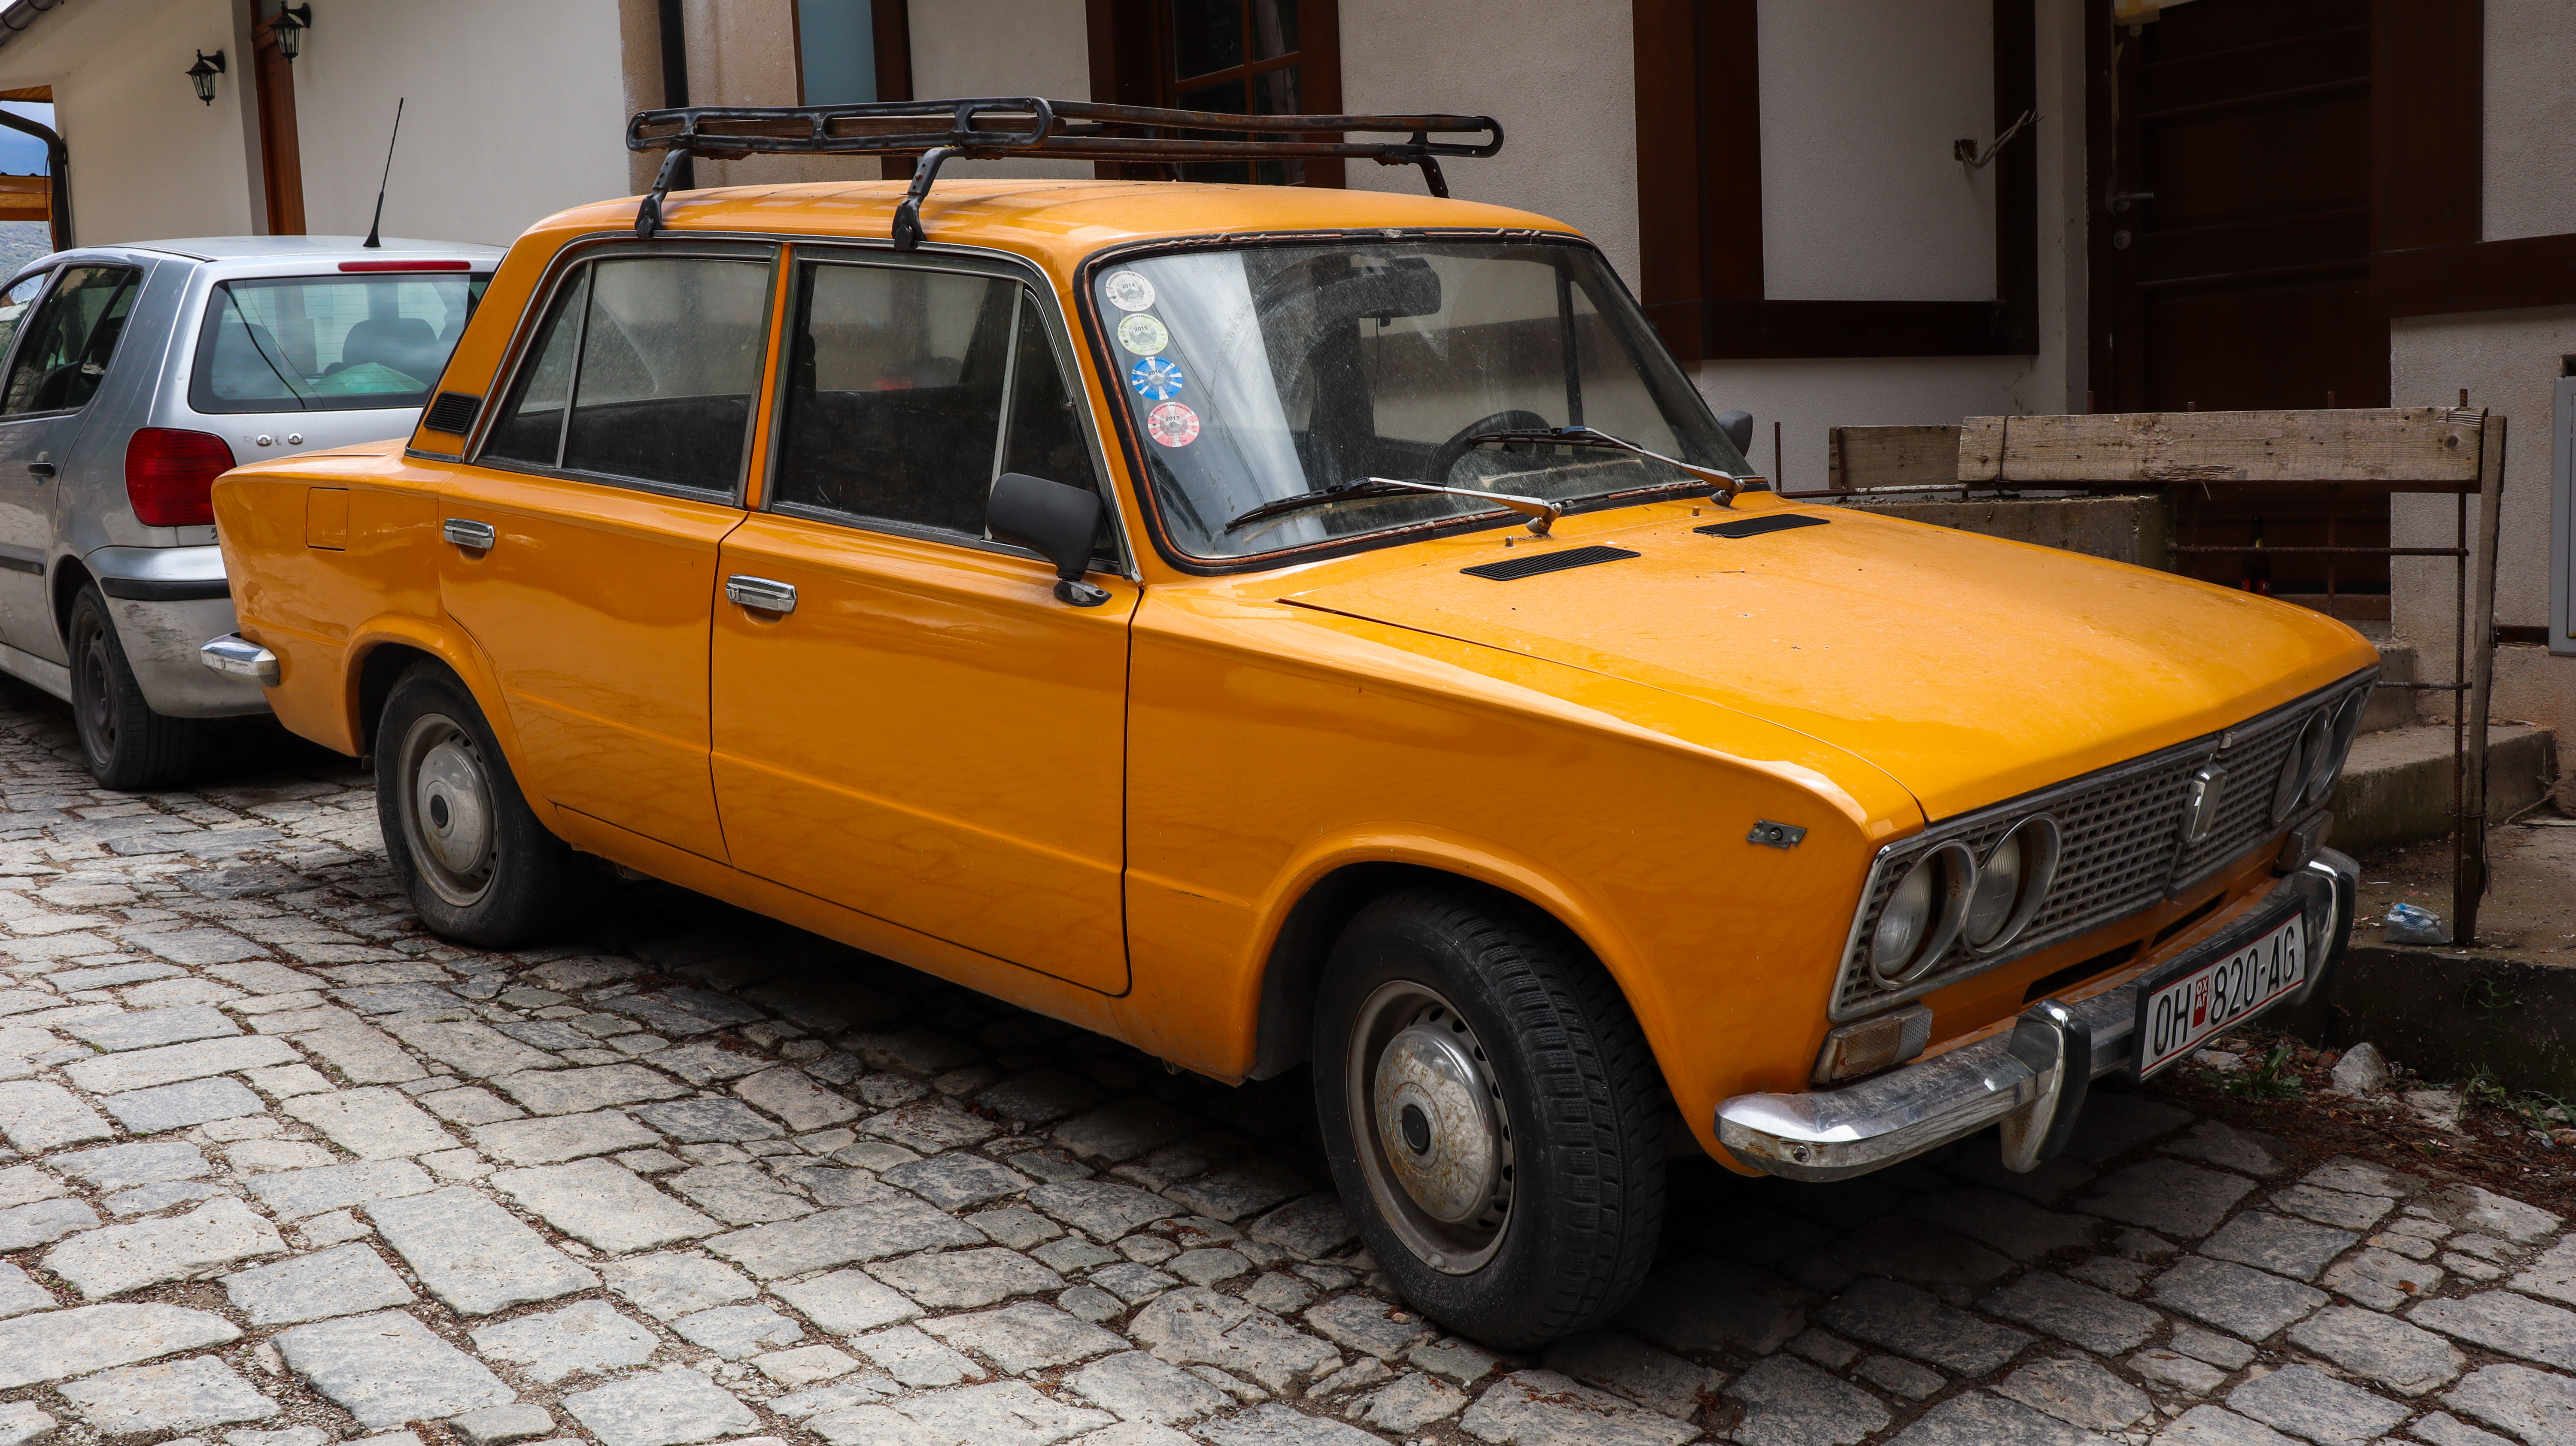 Vieille voiture à Ohrid : roule-t-elle encore ?